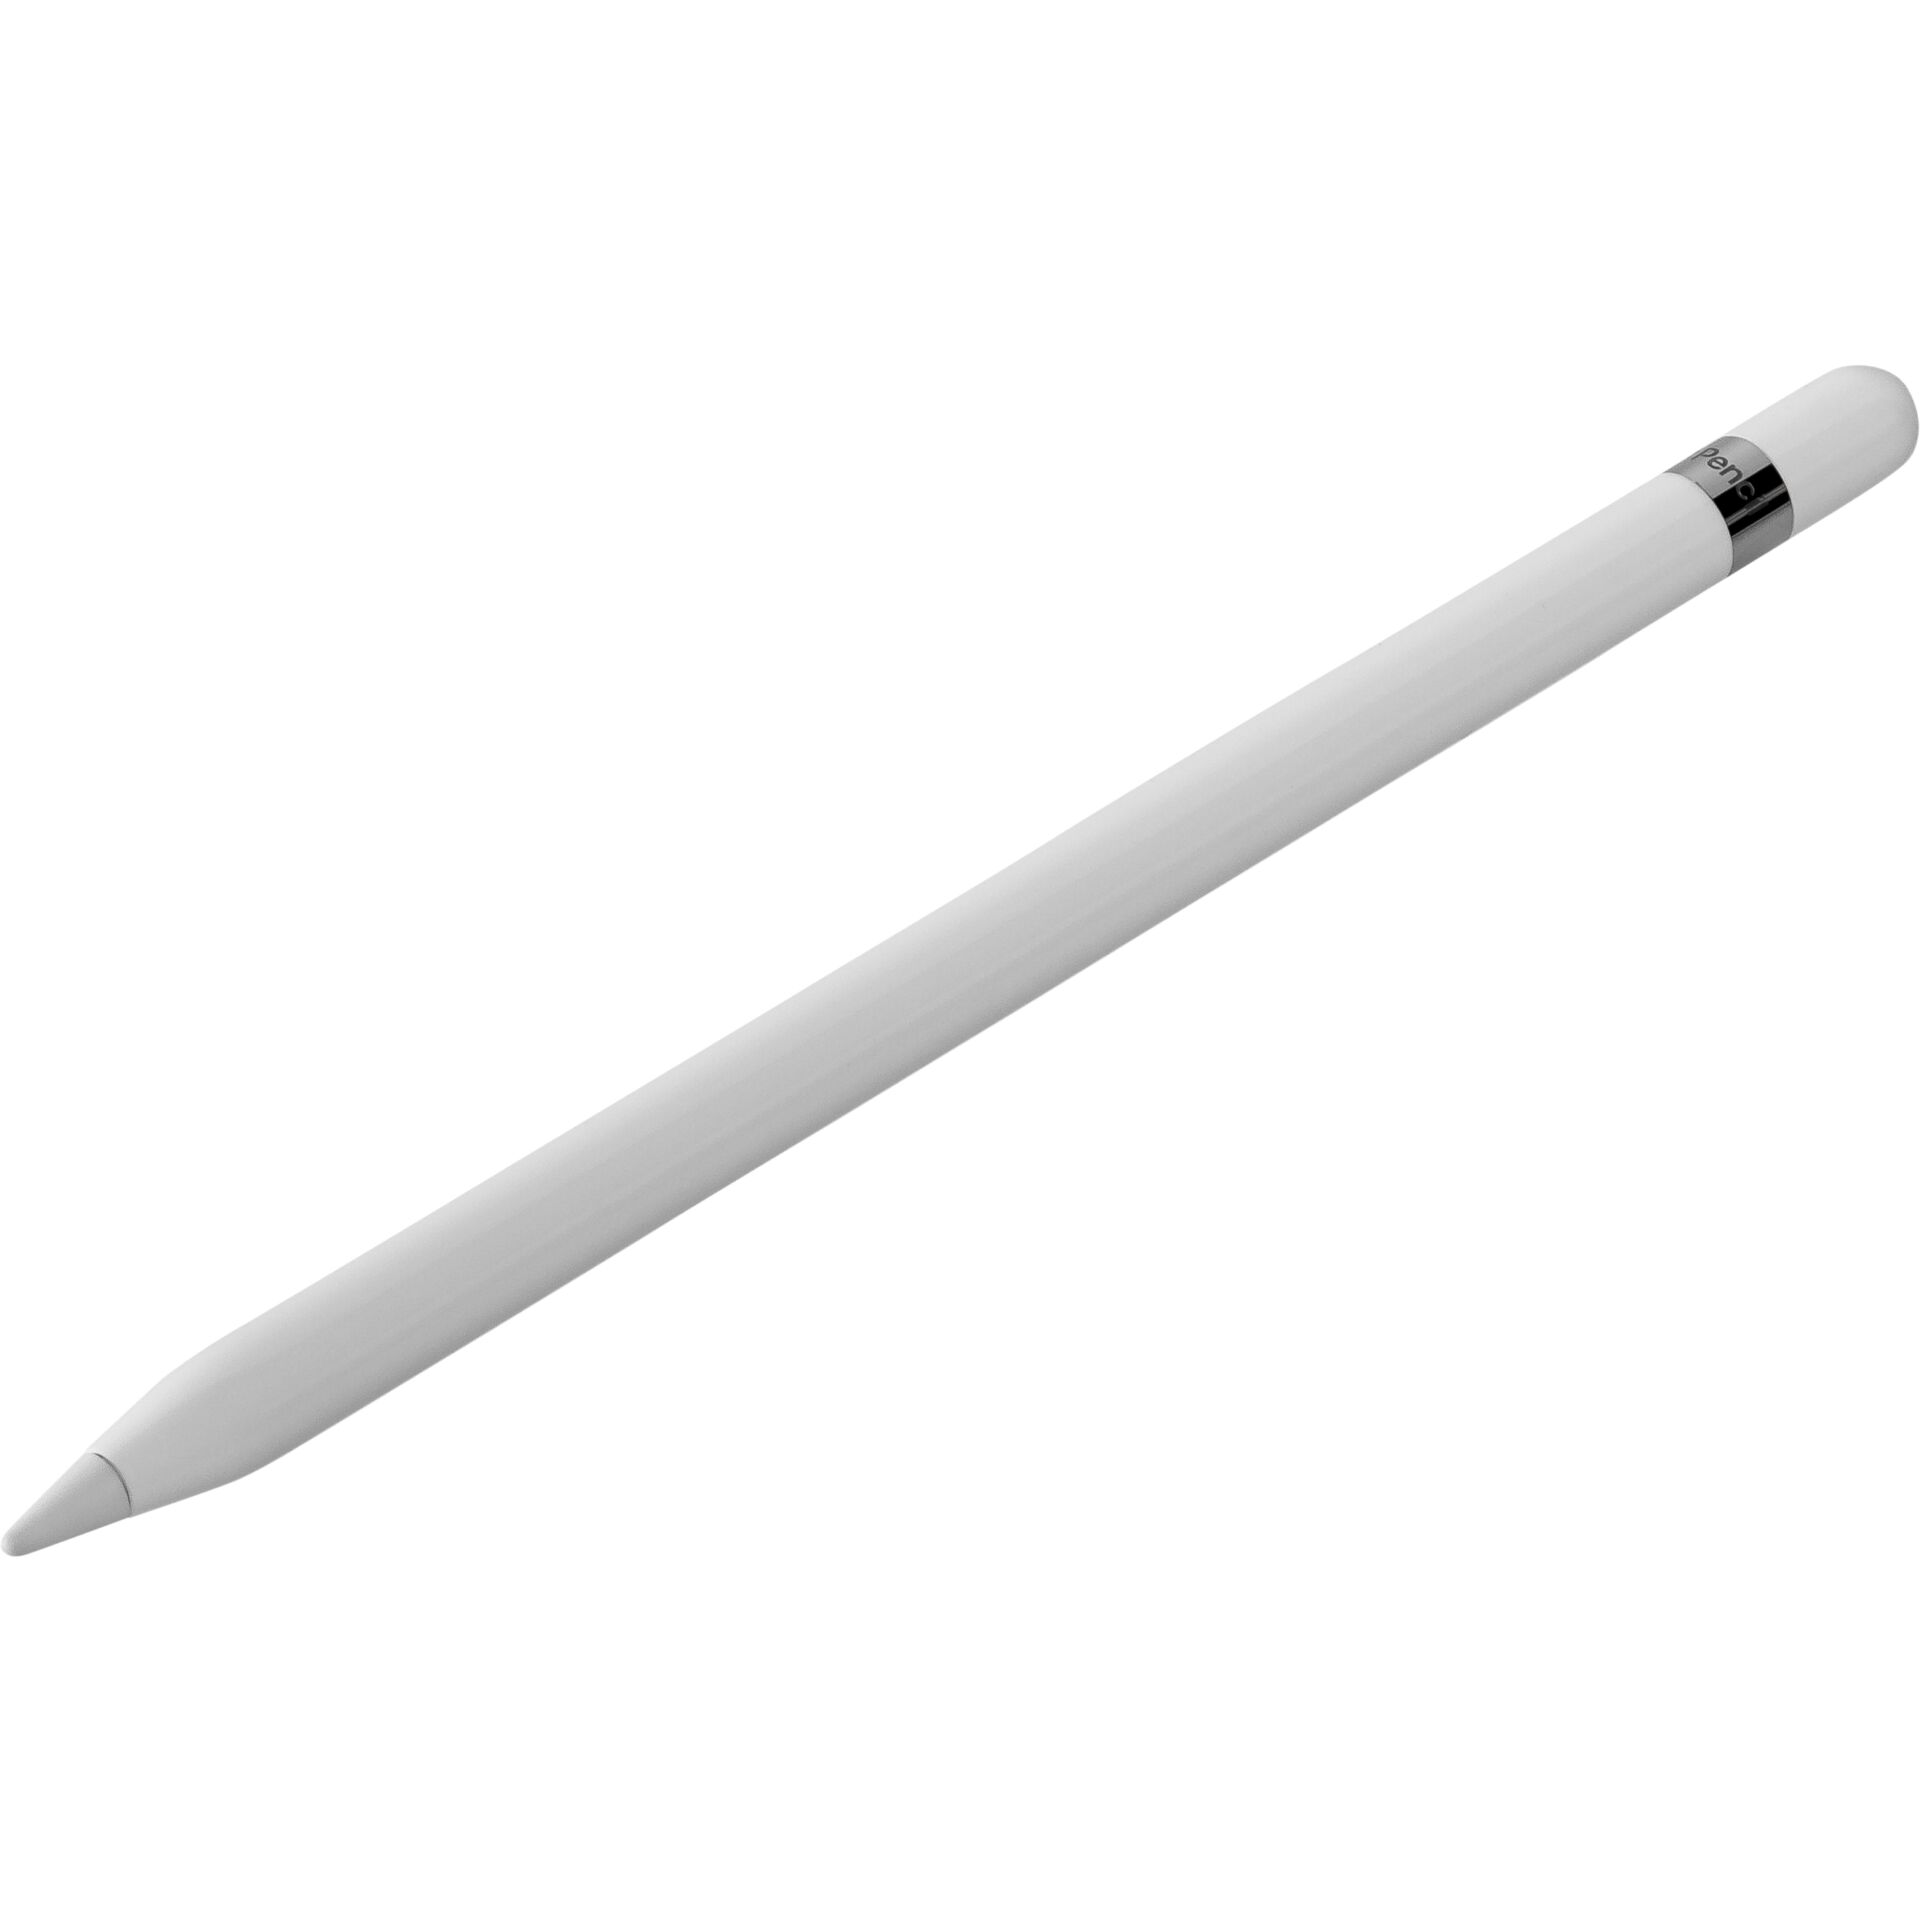 Apple Pencil (1st generation) Eingabestift 20,7 g Weiß